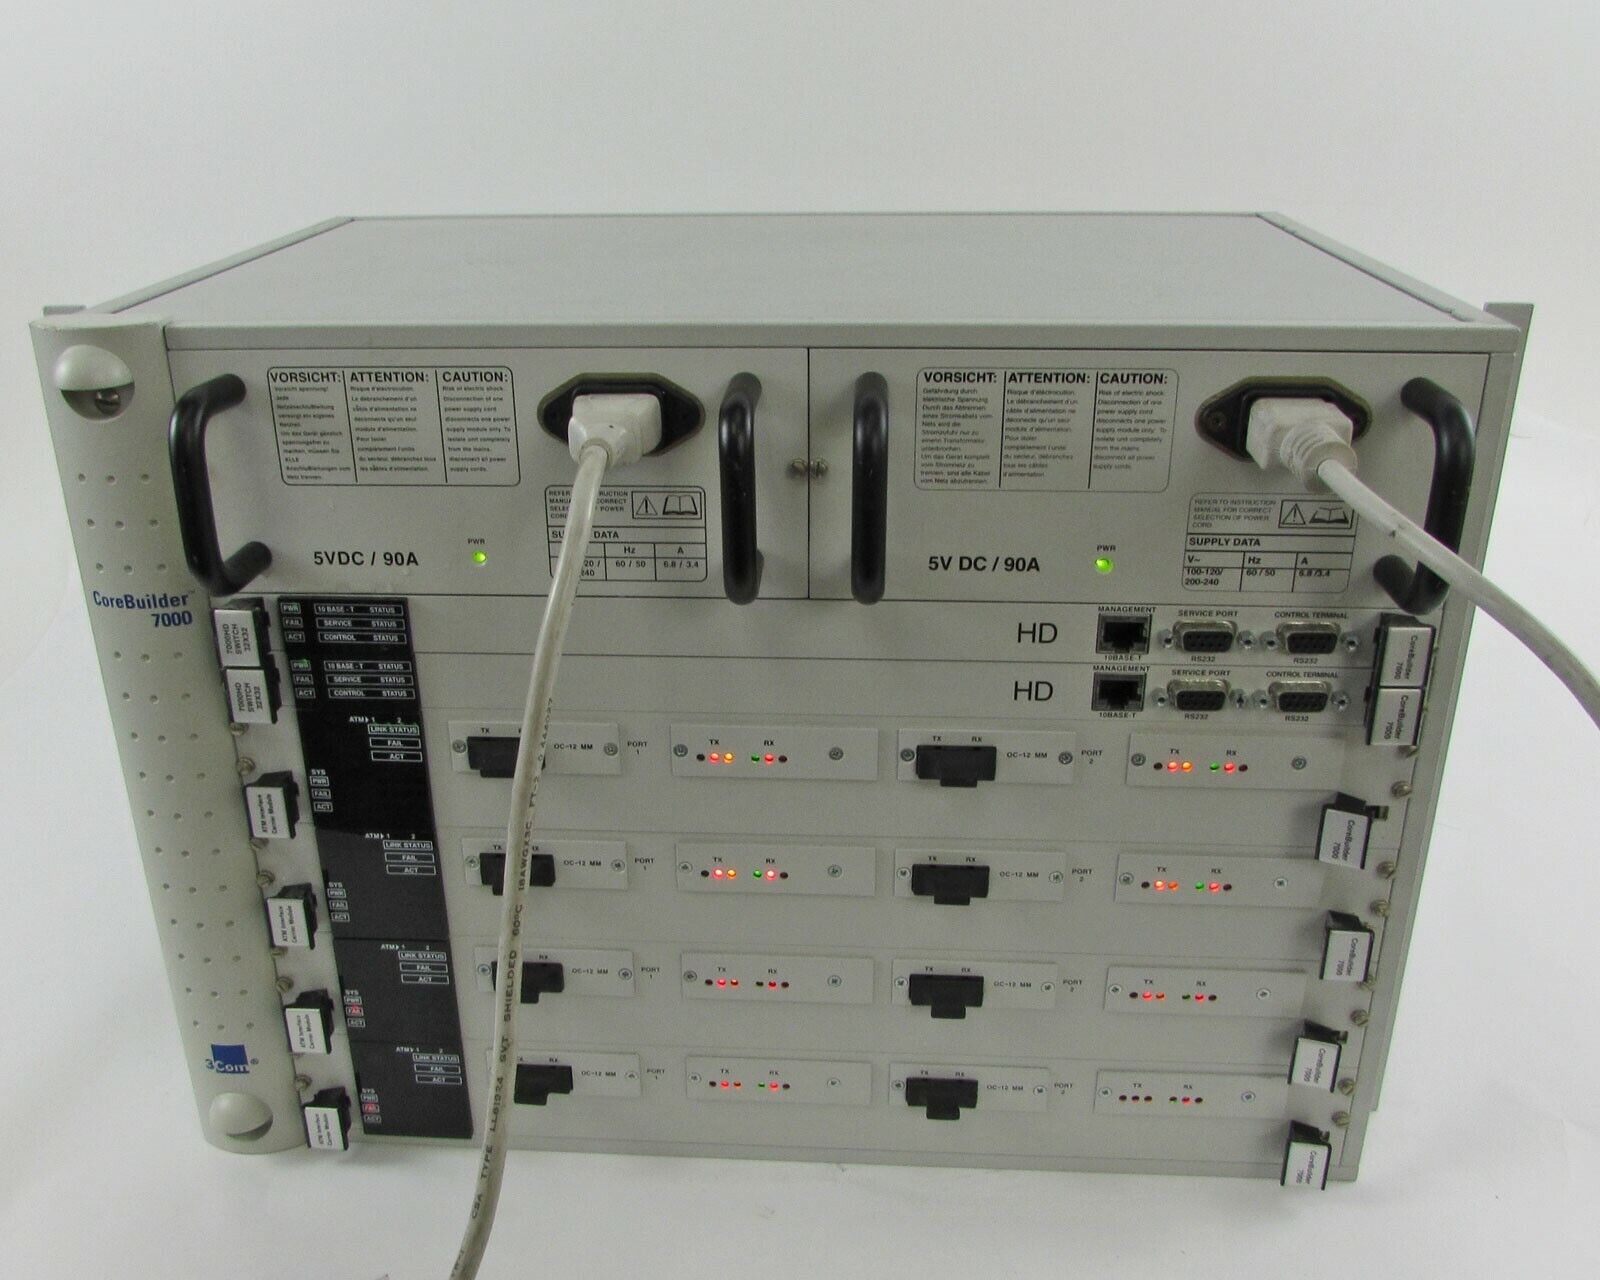 3Com CoreBuilder 7000HD Switch 5V DC/90A